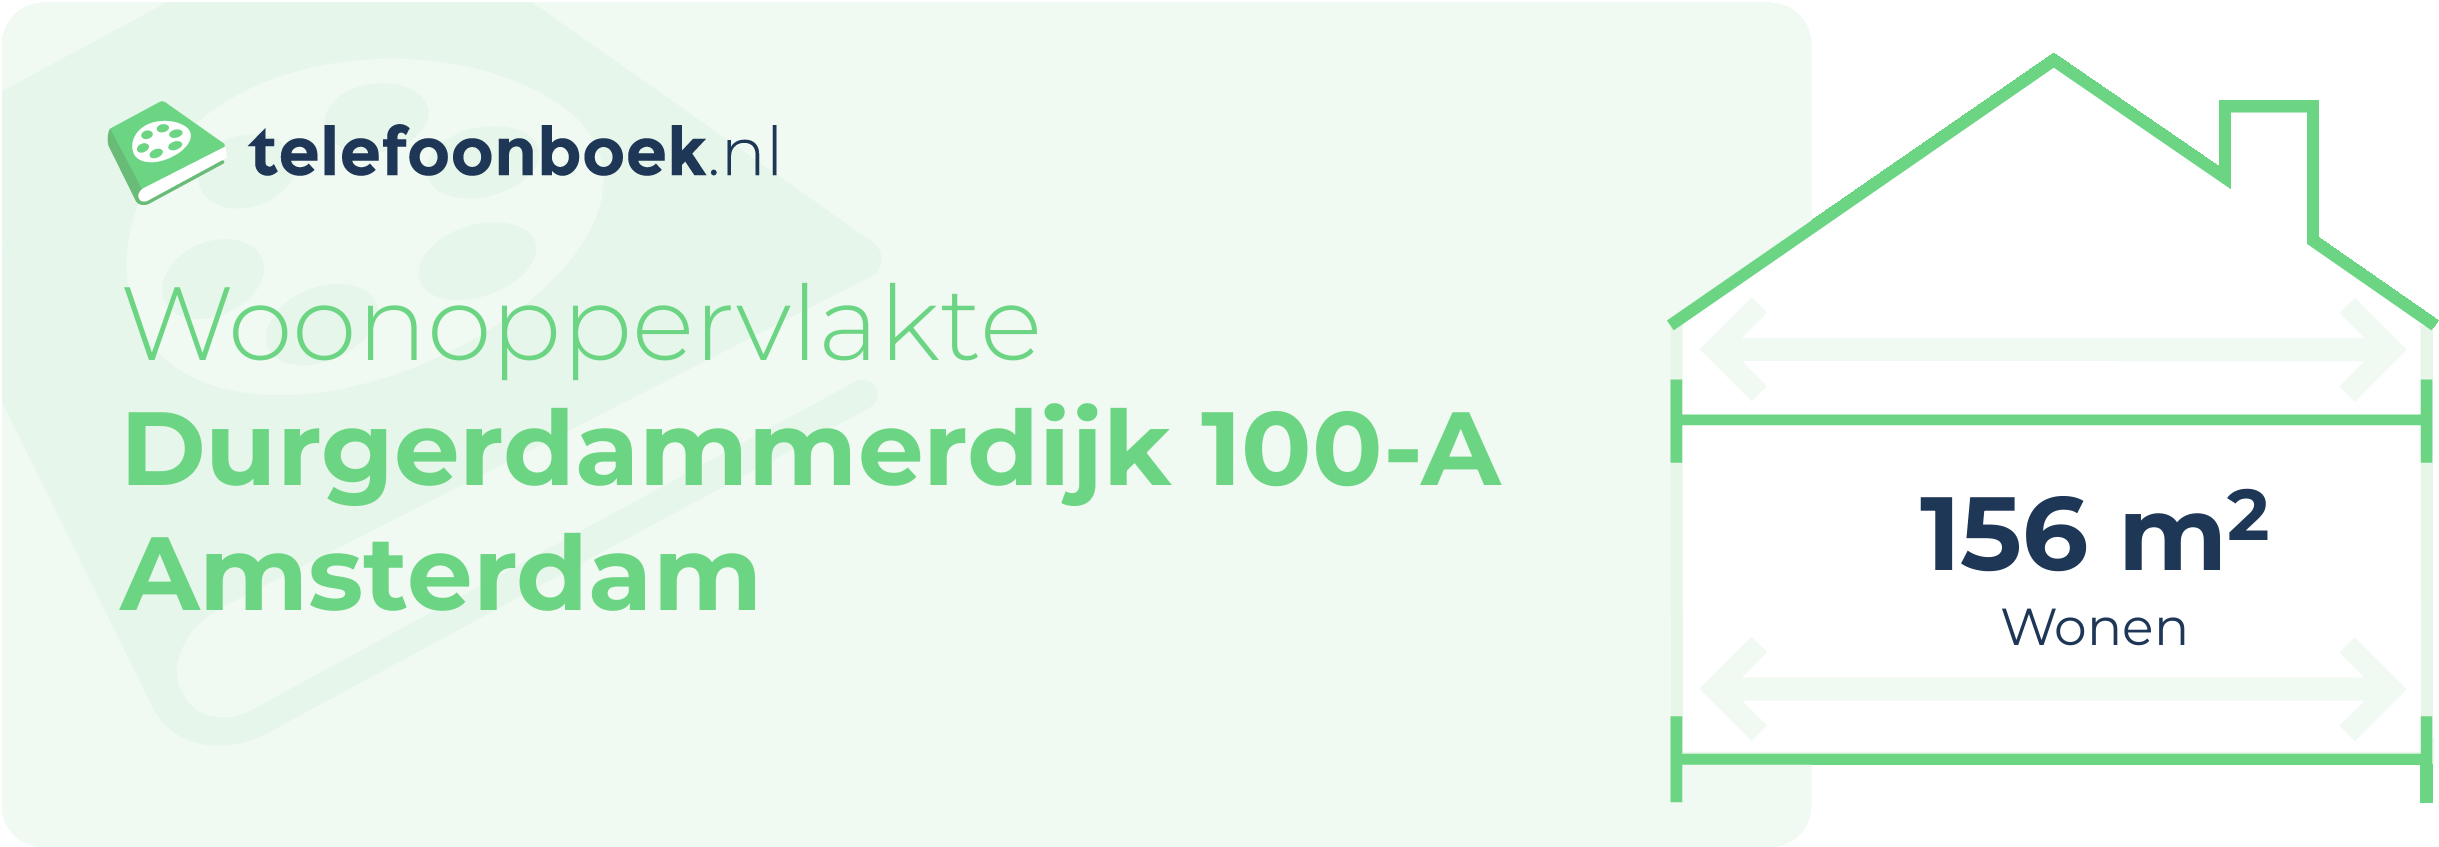 Woonoppervlakte Durgerdammerdijk 100-A Amsterdam